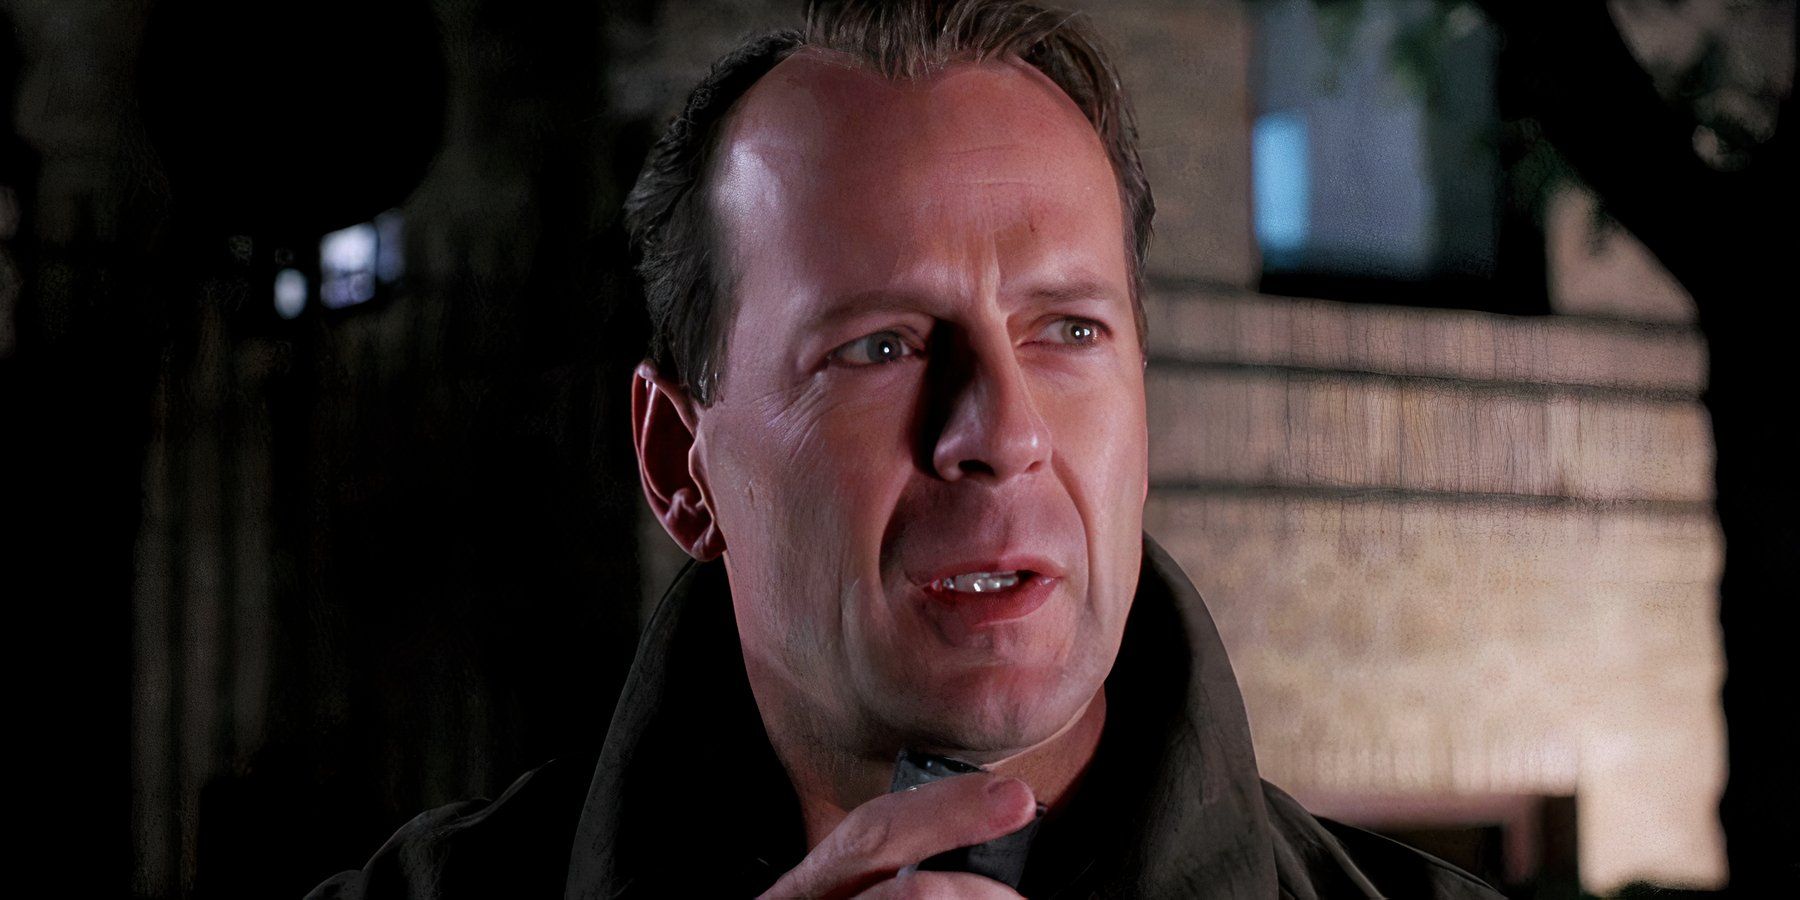 “Él te pondría a prueba”: M. Night Shyamalan detalla una tensa conversación con Bruce Willis durante el rodaje del thriller nominado al Oscar de 1999